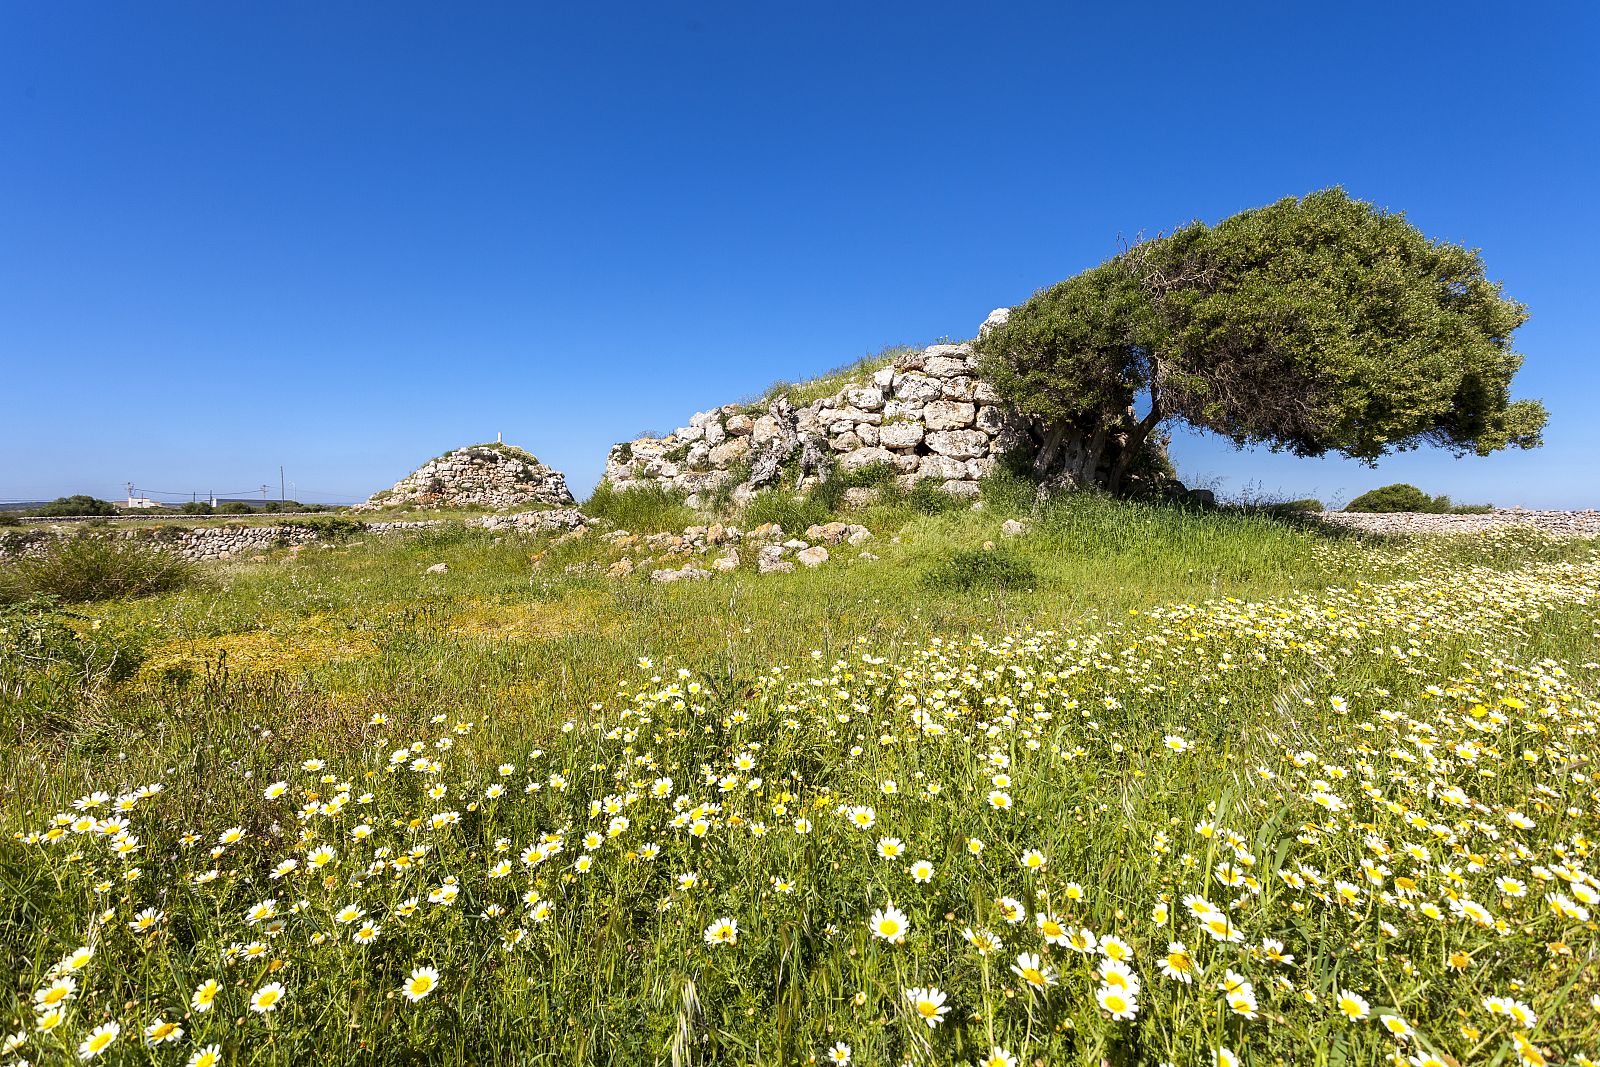 Montefí és un poblat talaiòtic de gran extensió que conserva actualment nombroses restes monumentals